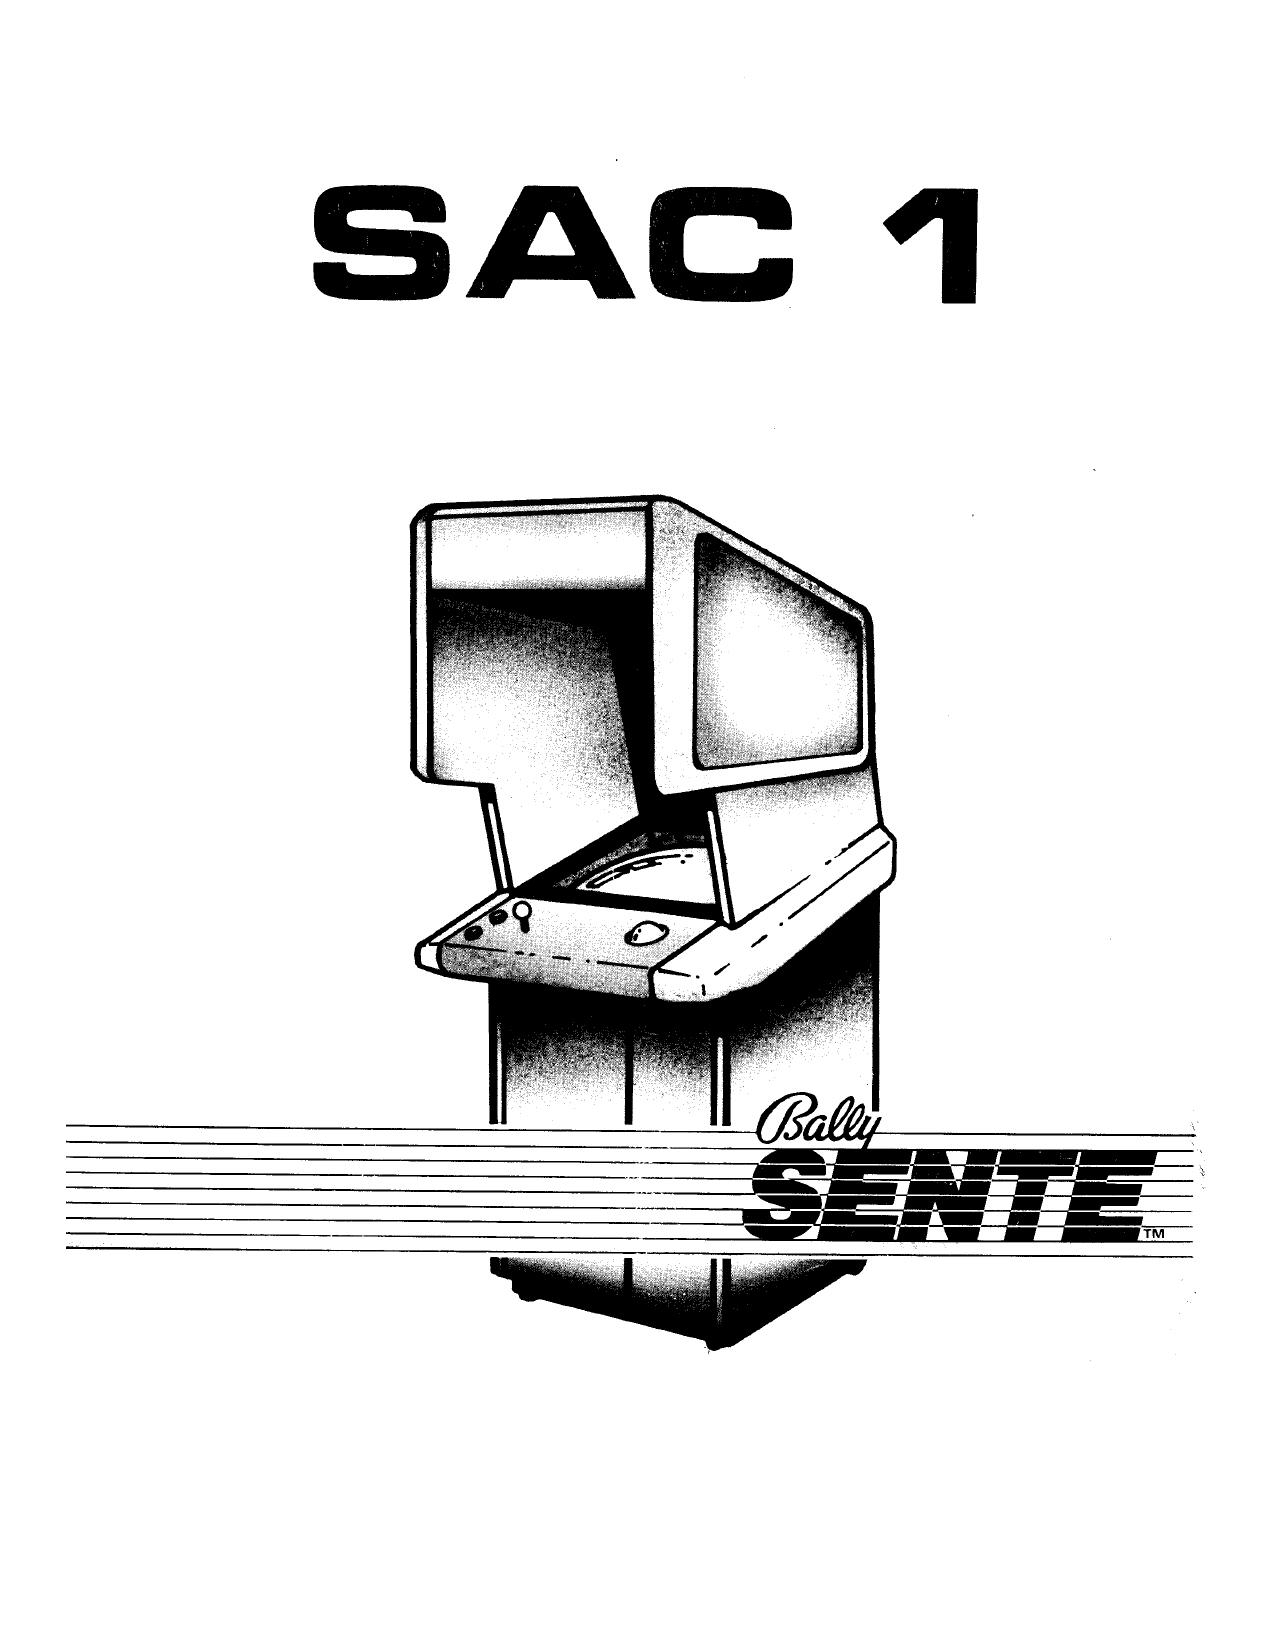 SAC-1 Bally Cabinet